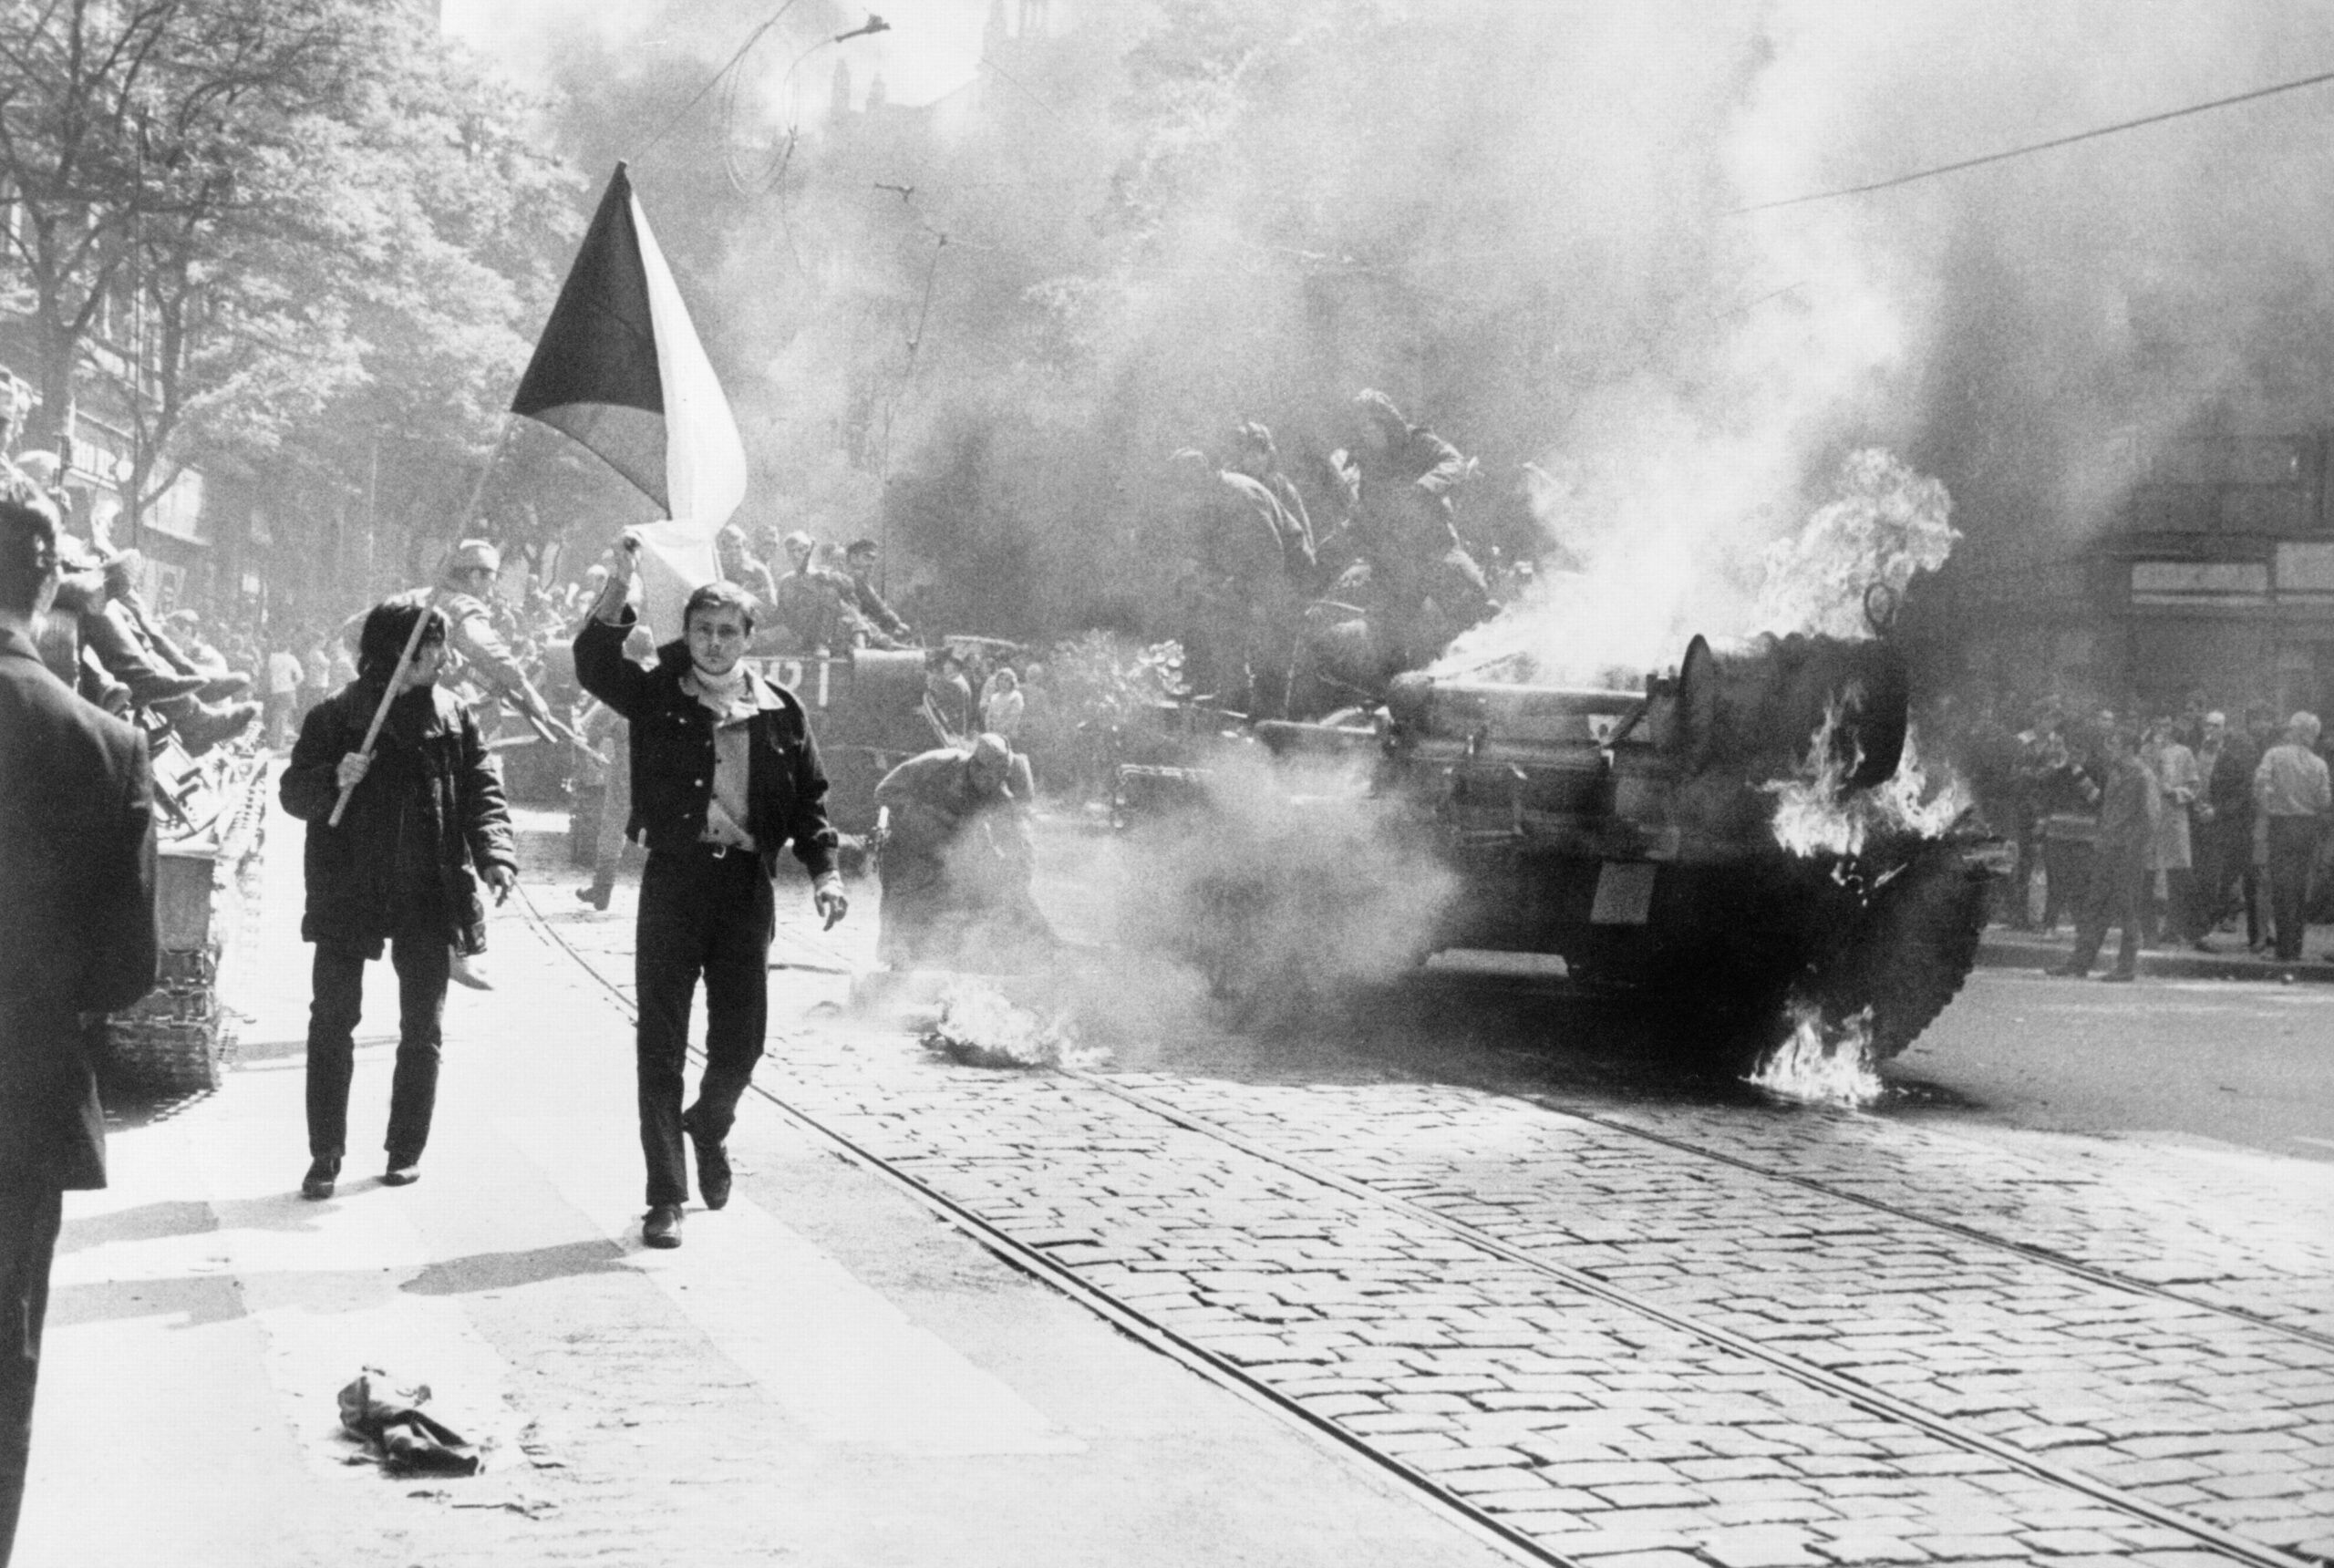 Pražské jaro 1968 a rady pracujících – inspirace pro dnešek